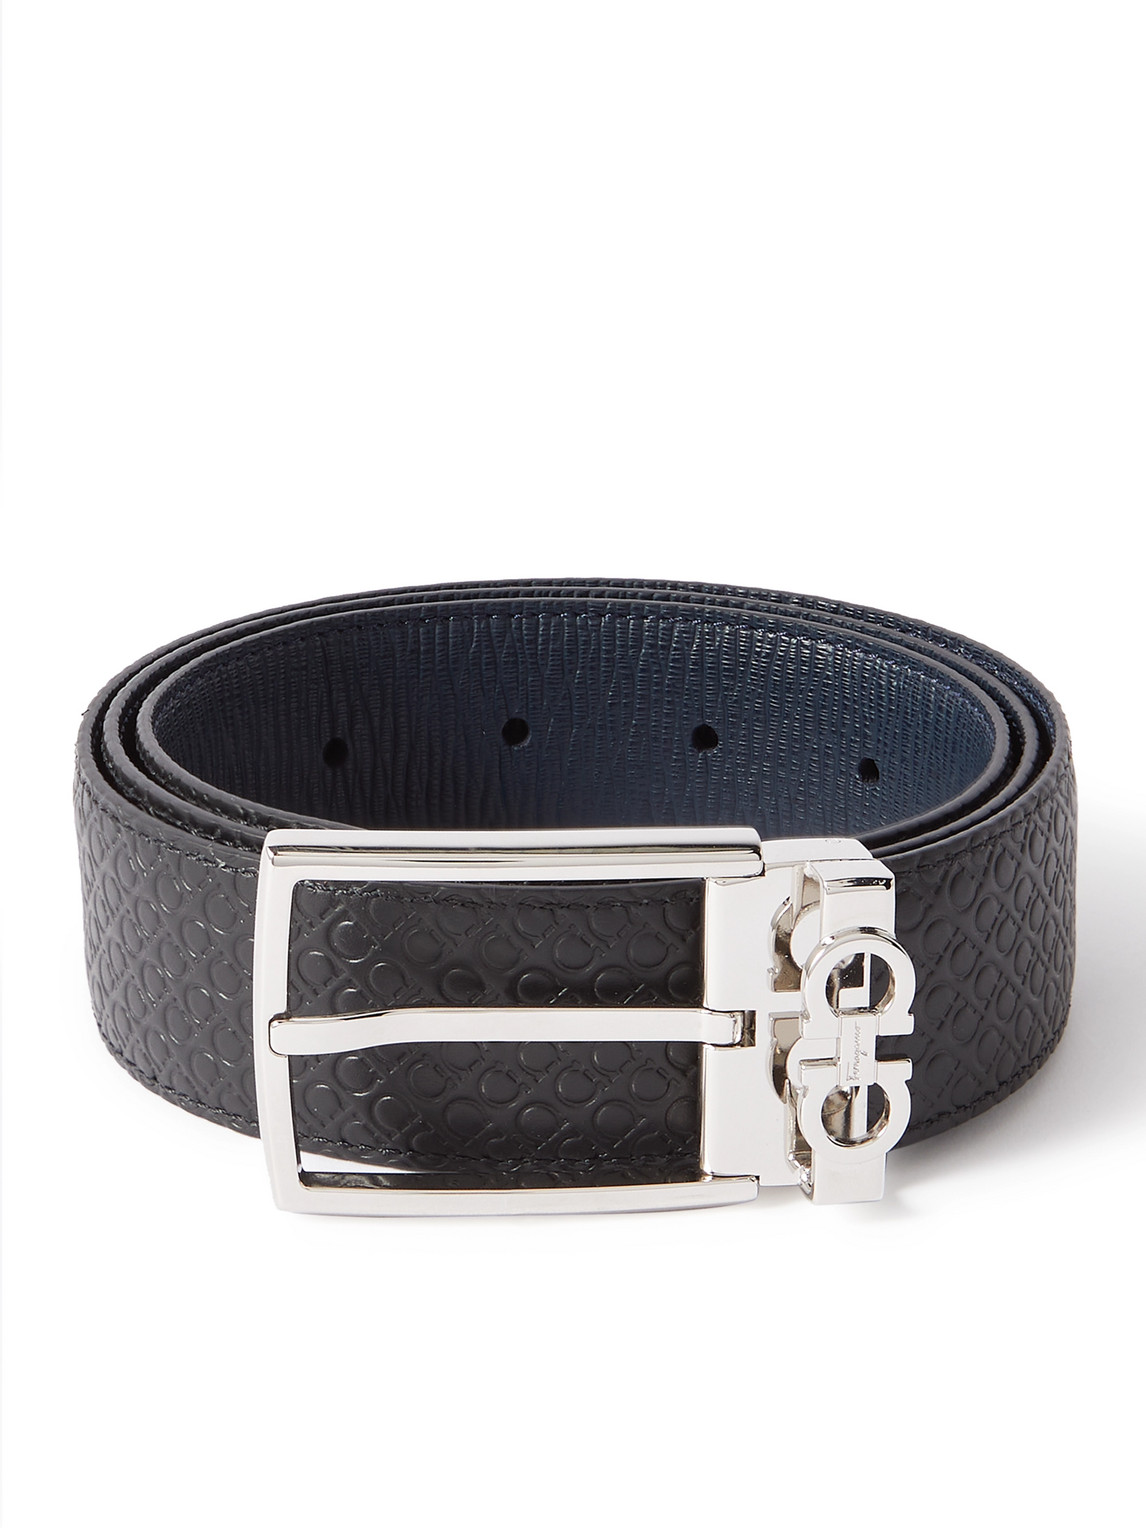 3.5cm Reversible Debossed Leather Belt